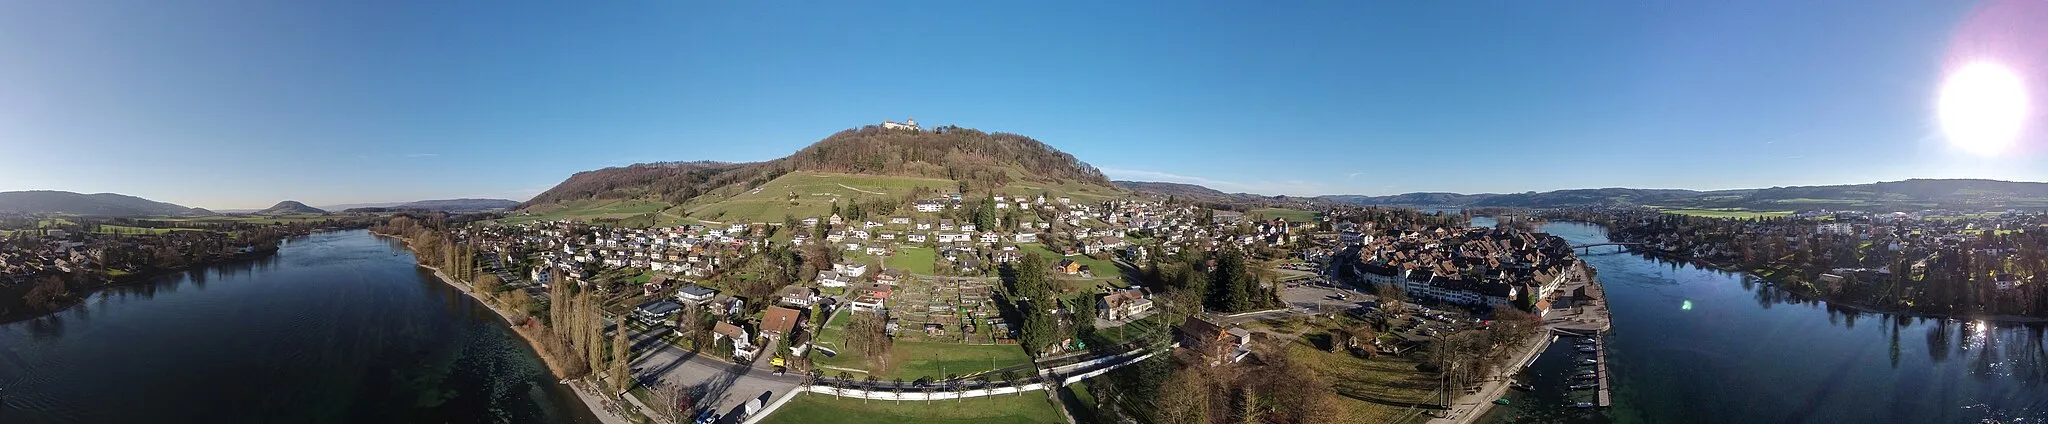 Photo showing: Switzerland, Canton of Schaffhausen, aerial views of Stein am Rhein